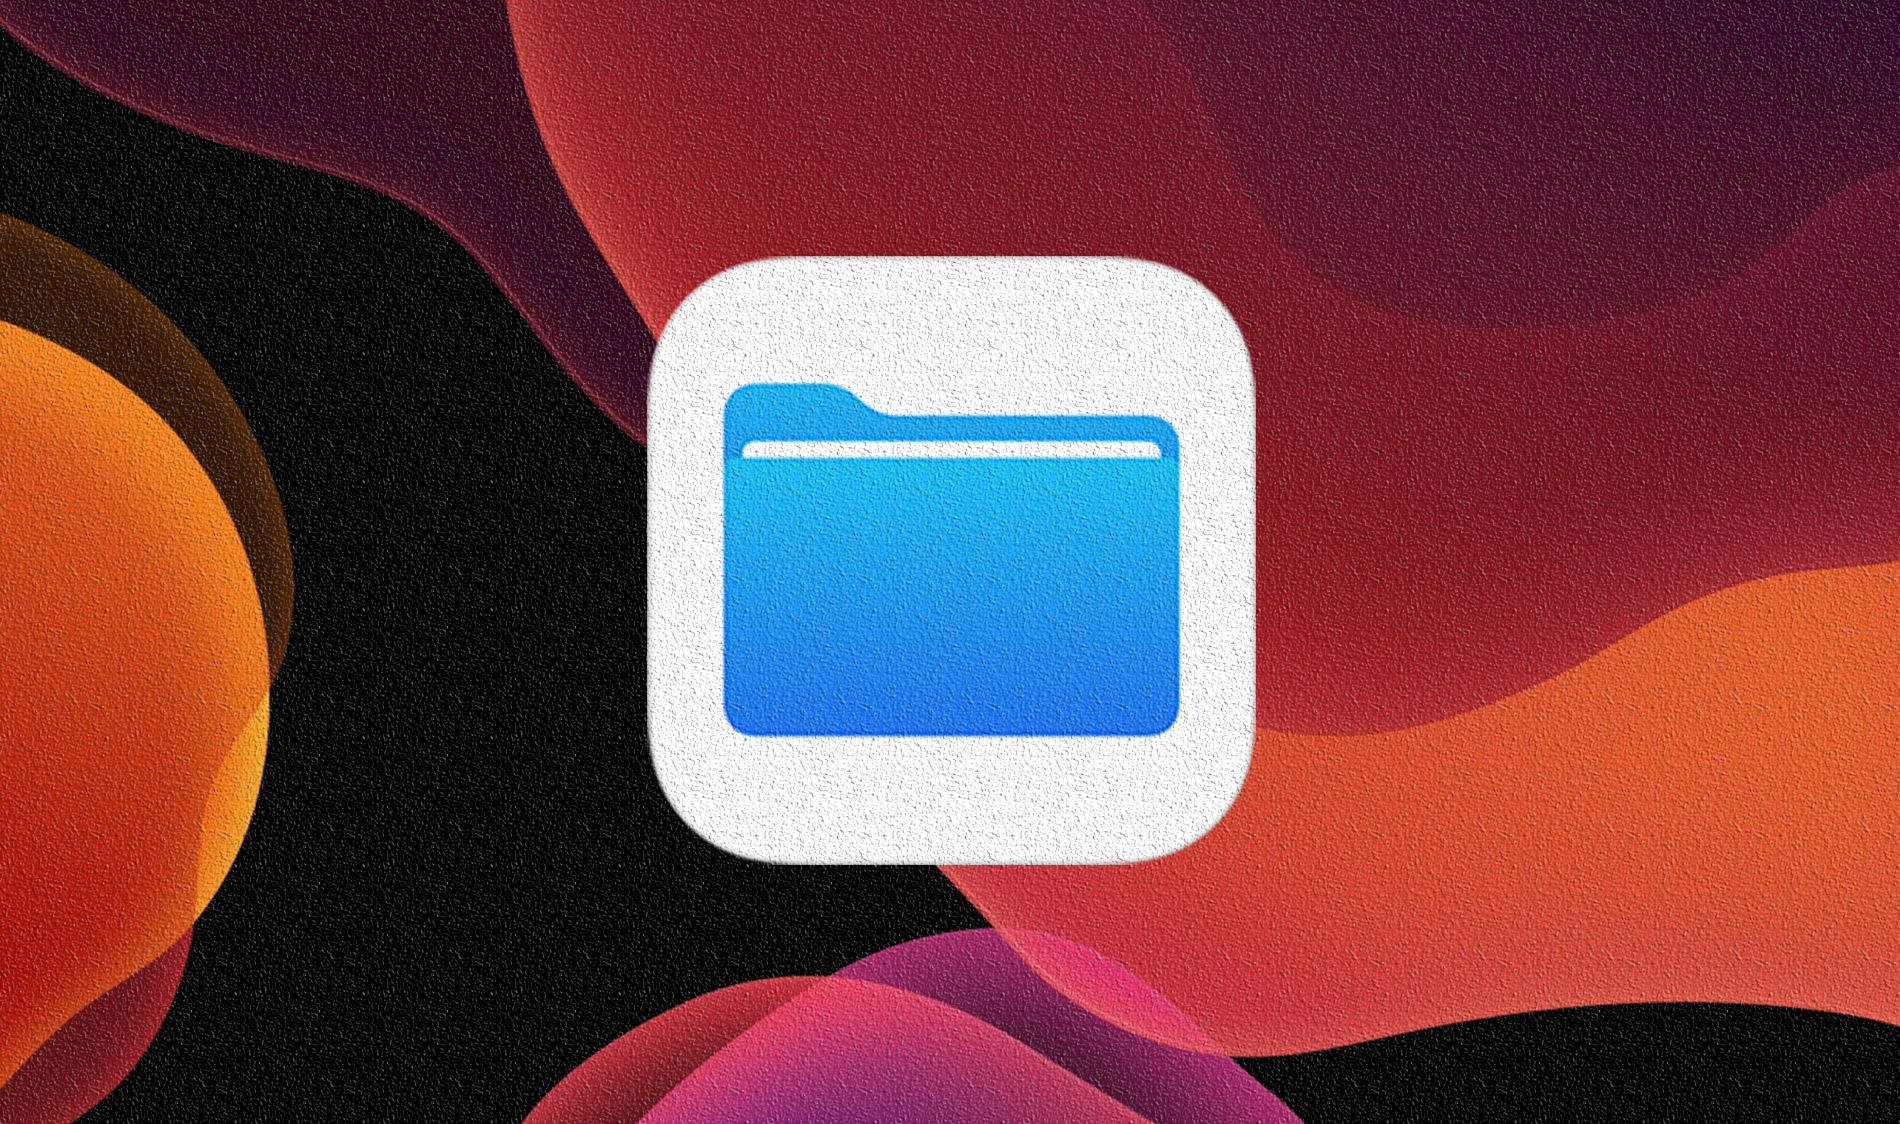 أفضل 13 تطبيقًا لميزات الملفات الرائعة في iOS 13 و iPadOS